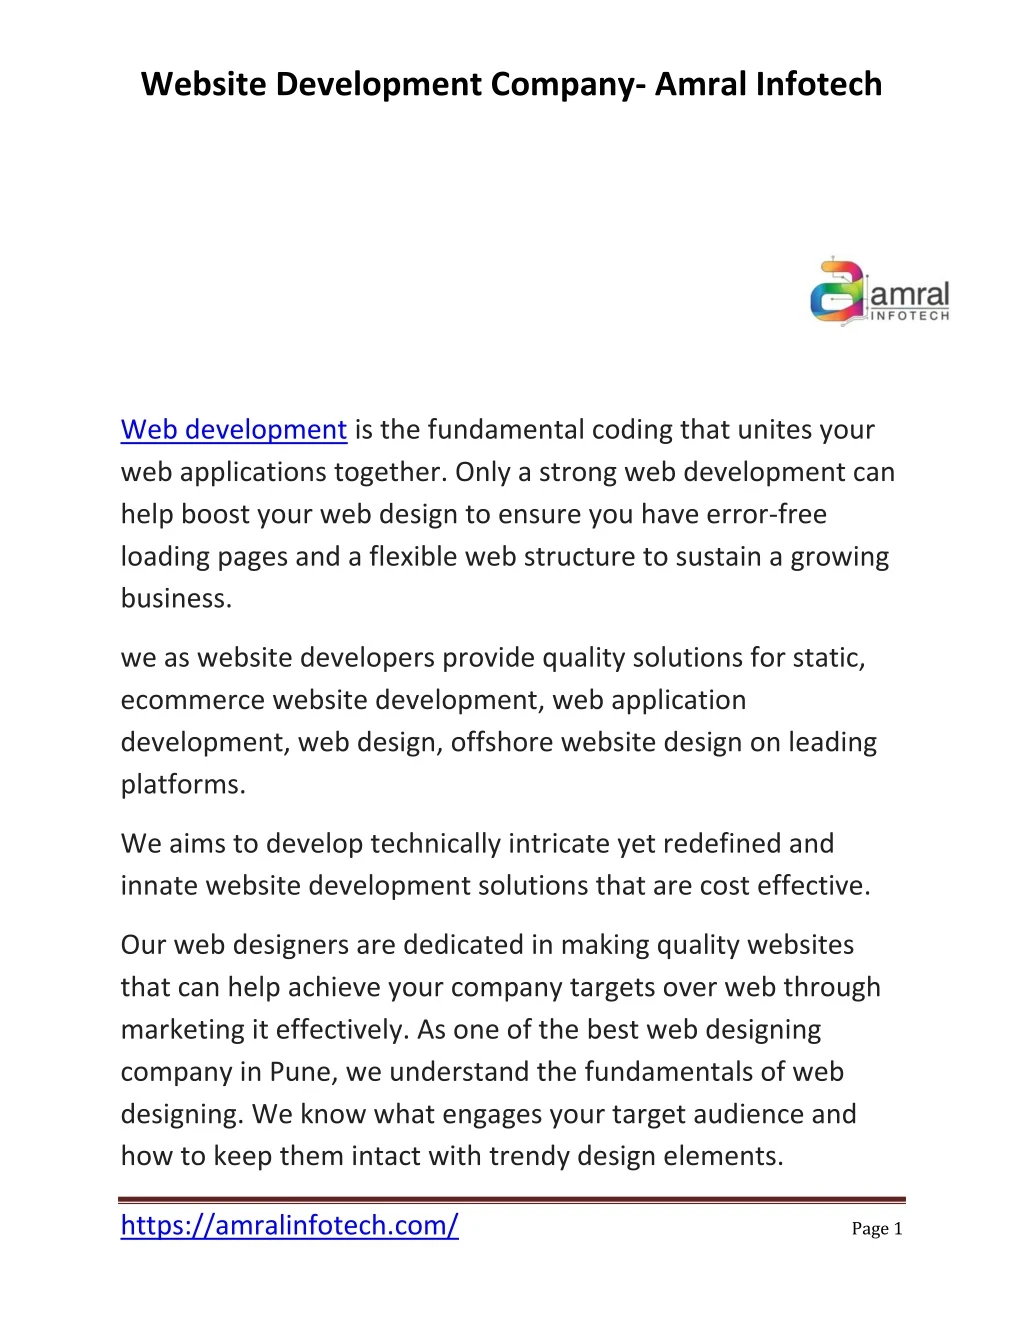 website development company amral infotech